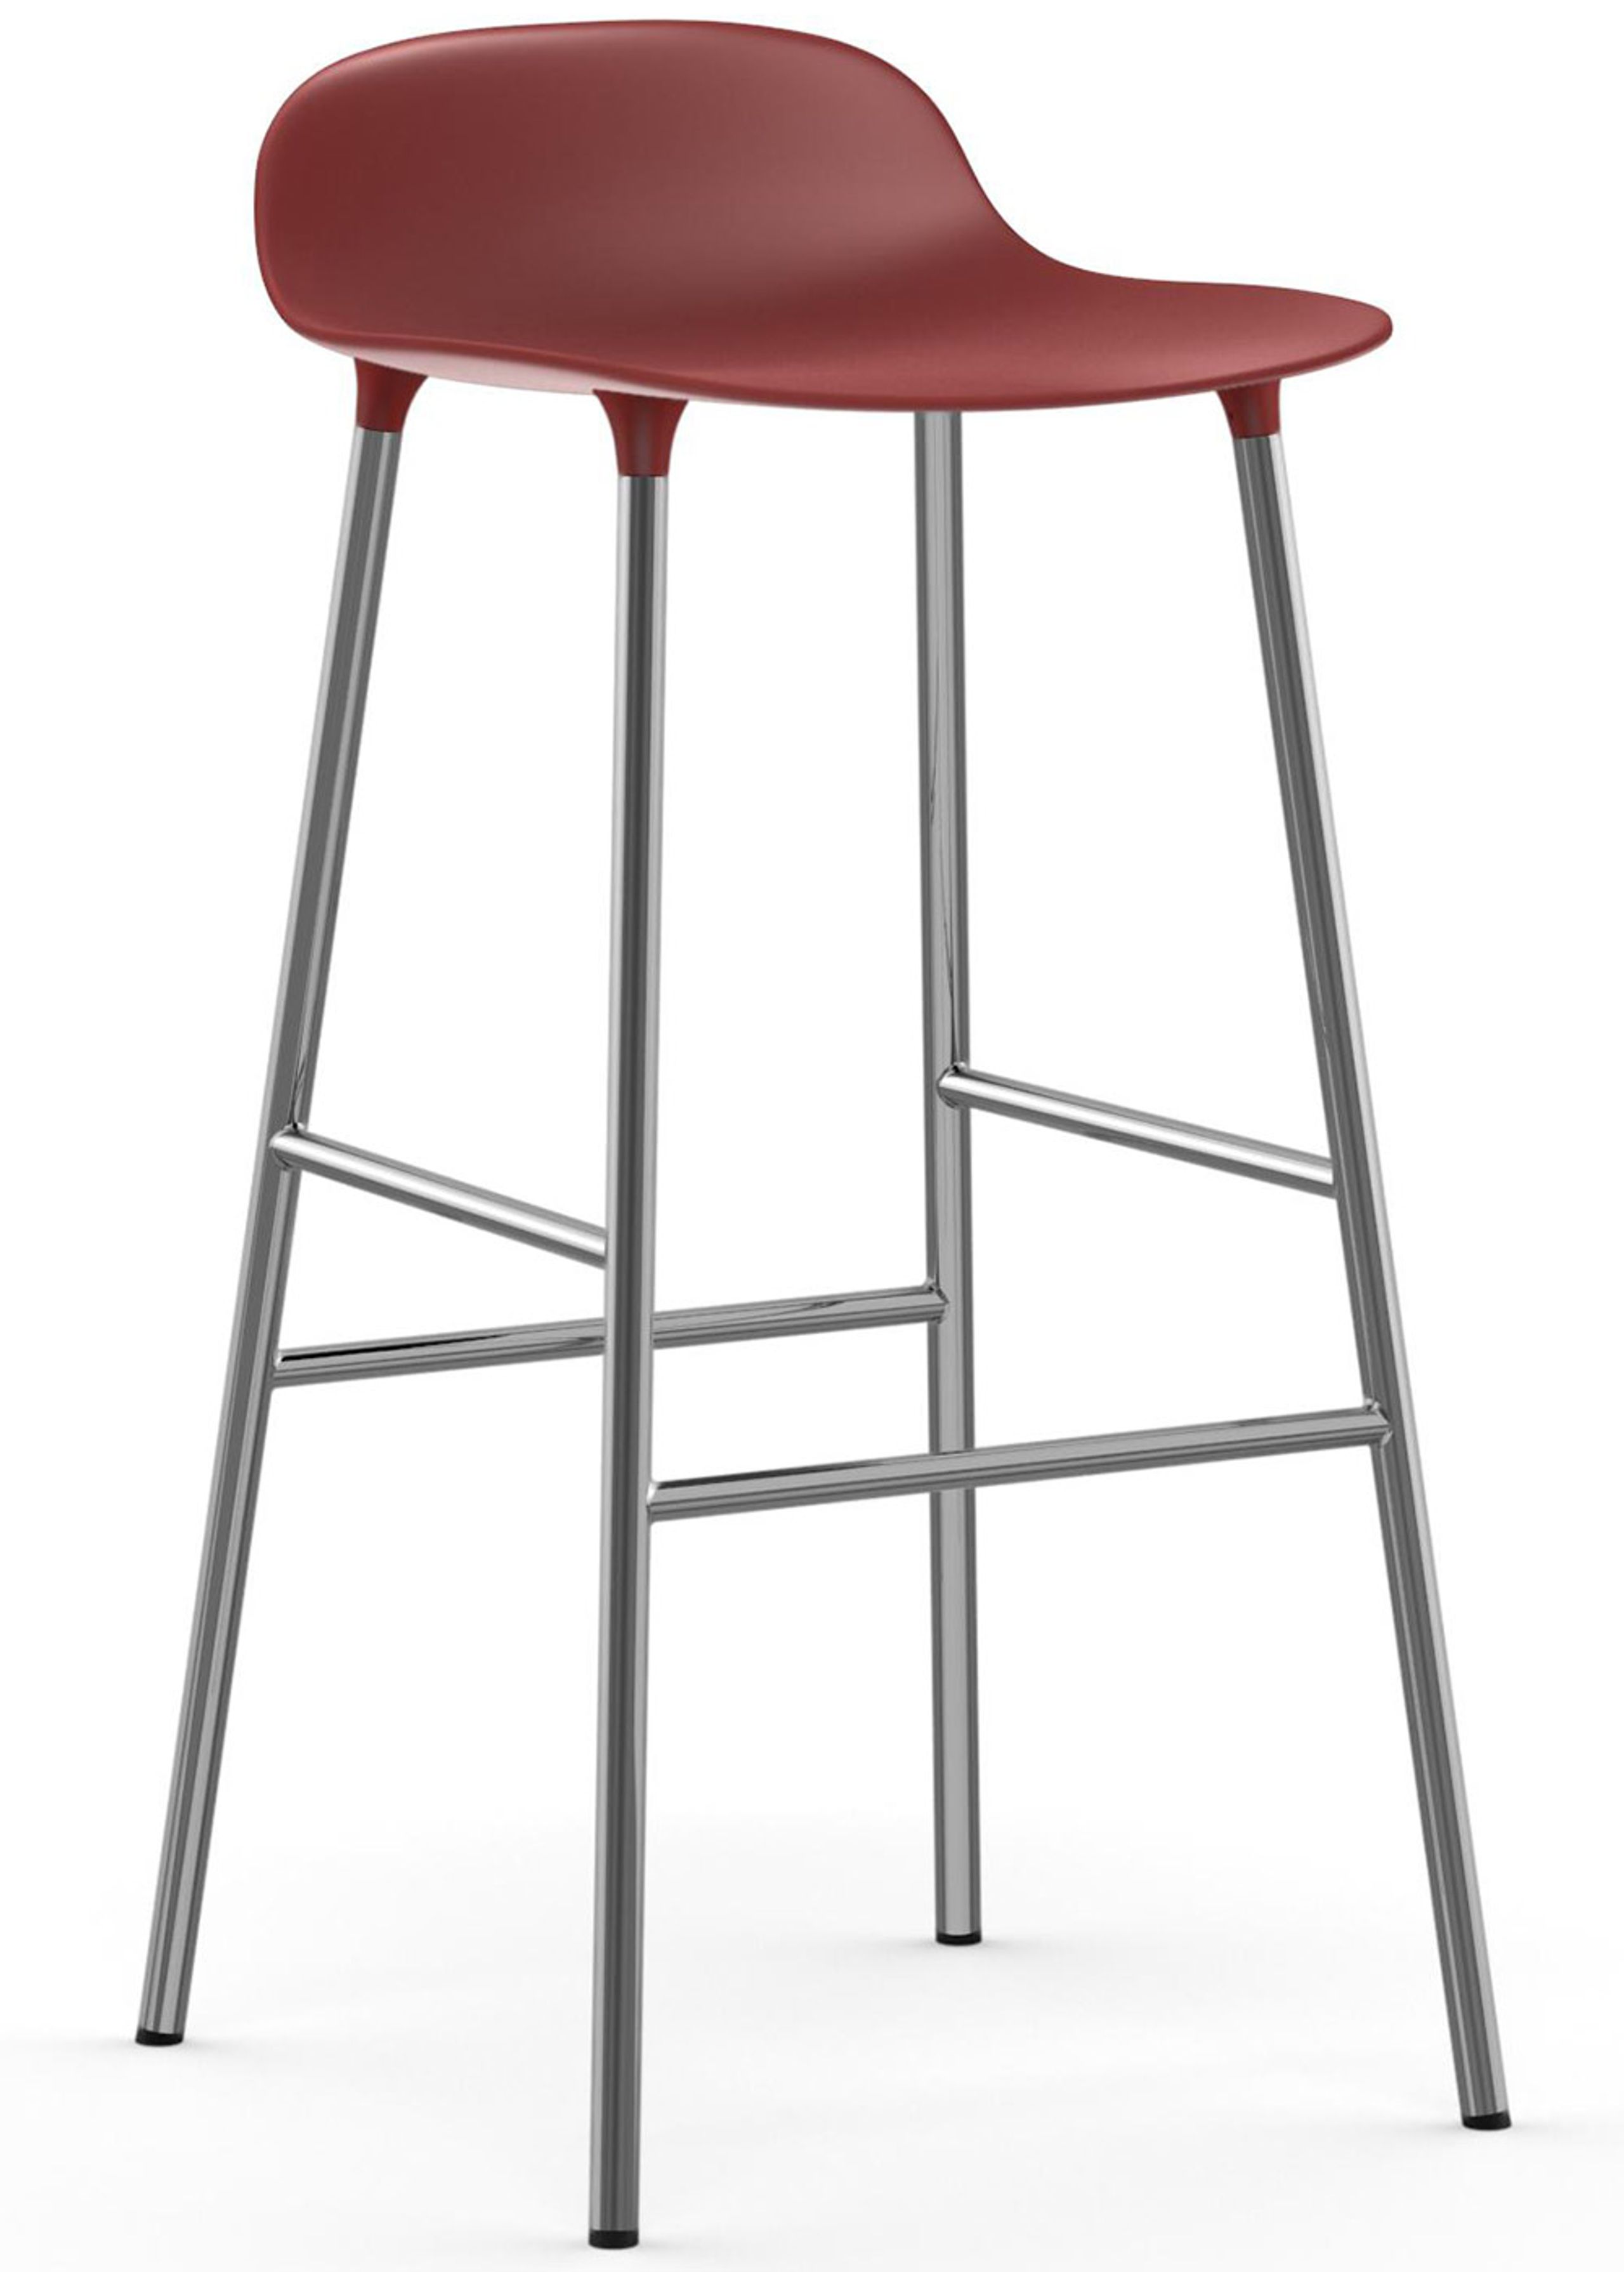 Normann Copenhagen - Tabouret de bar - Form Barstool - 75 cm - Steel, Chrome & Brass - Chrome / Red